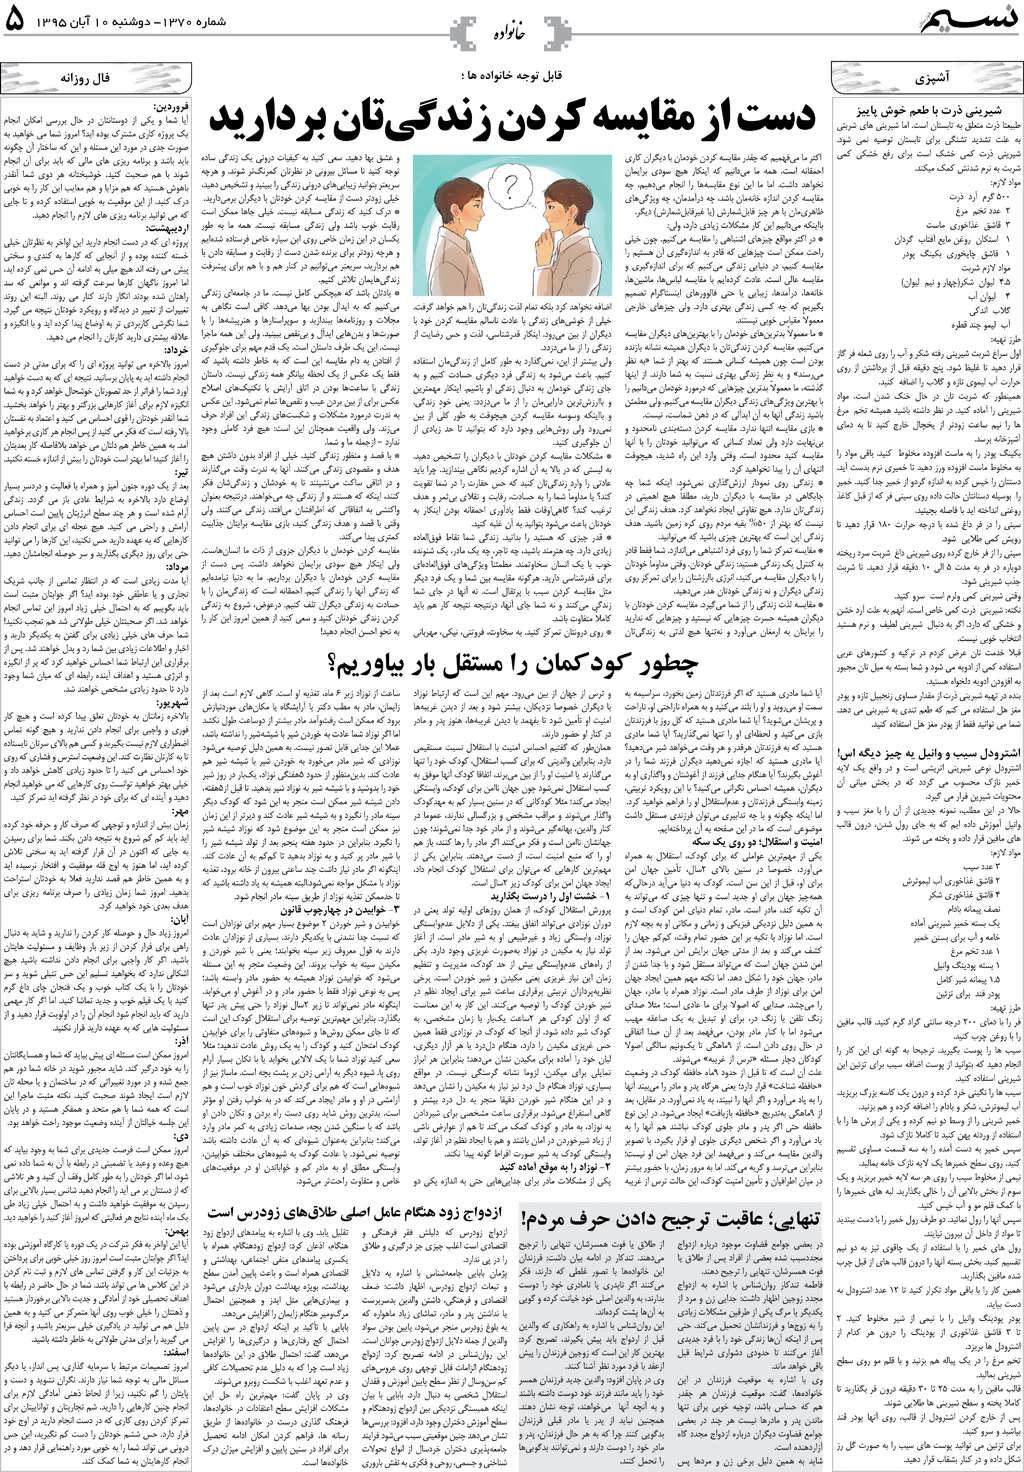 صفحه خانواده روزنامه نسیم شماره 1370